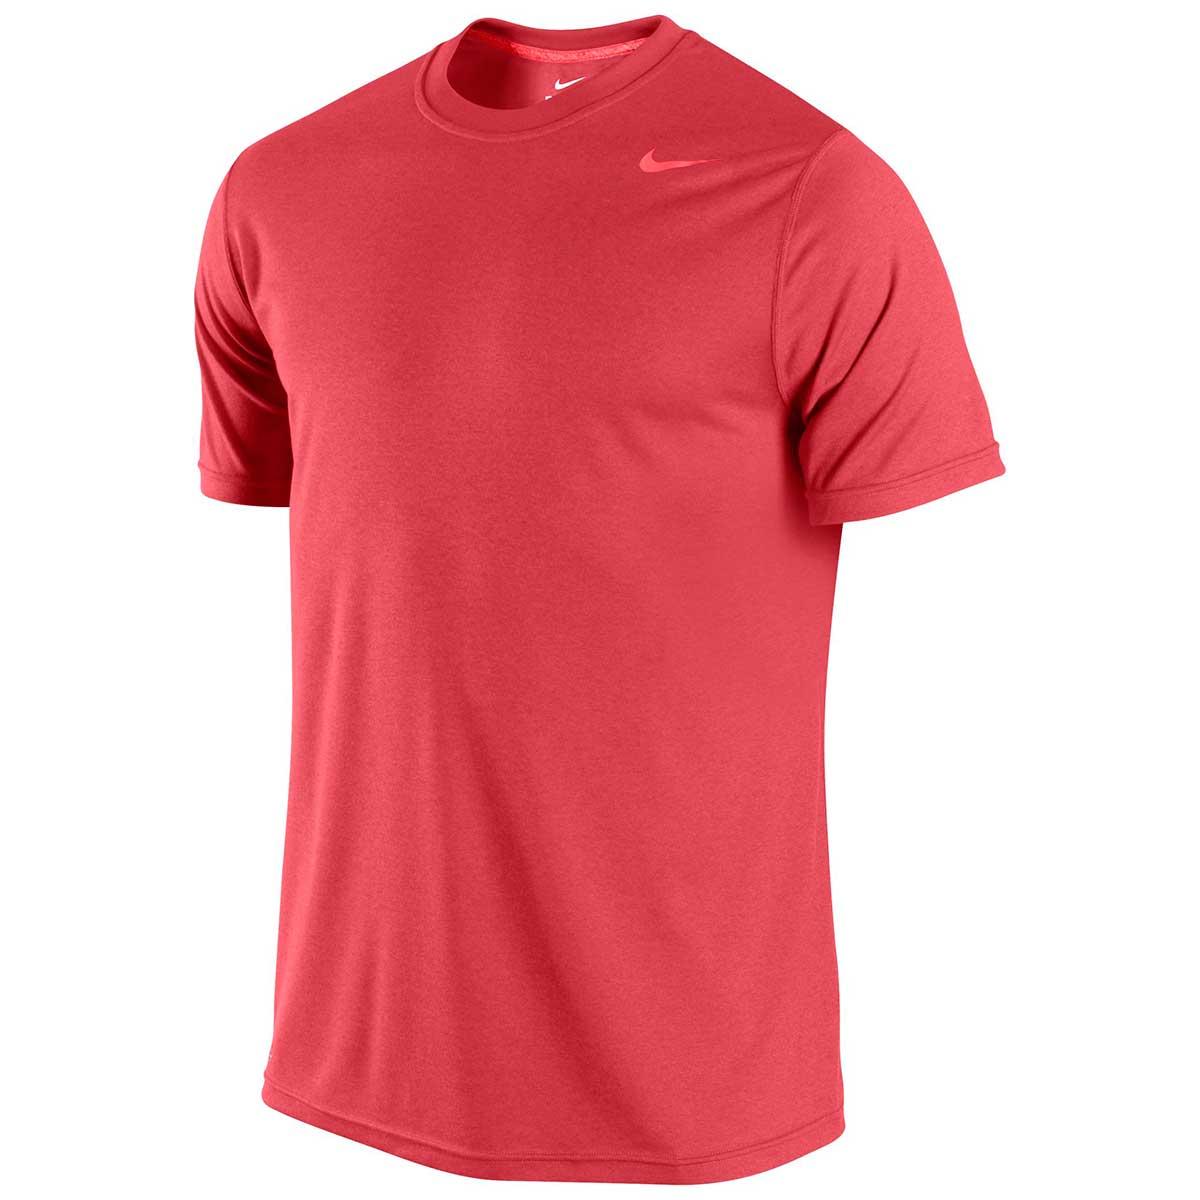 Buy Nike Basic Legend Round Neck T-shirt Online India|Nike Men Clothing